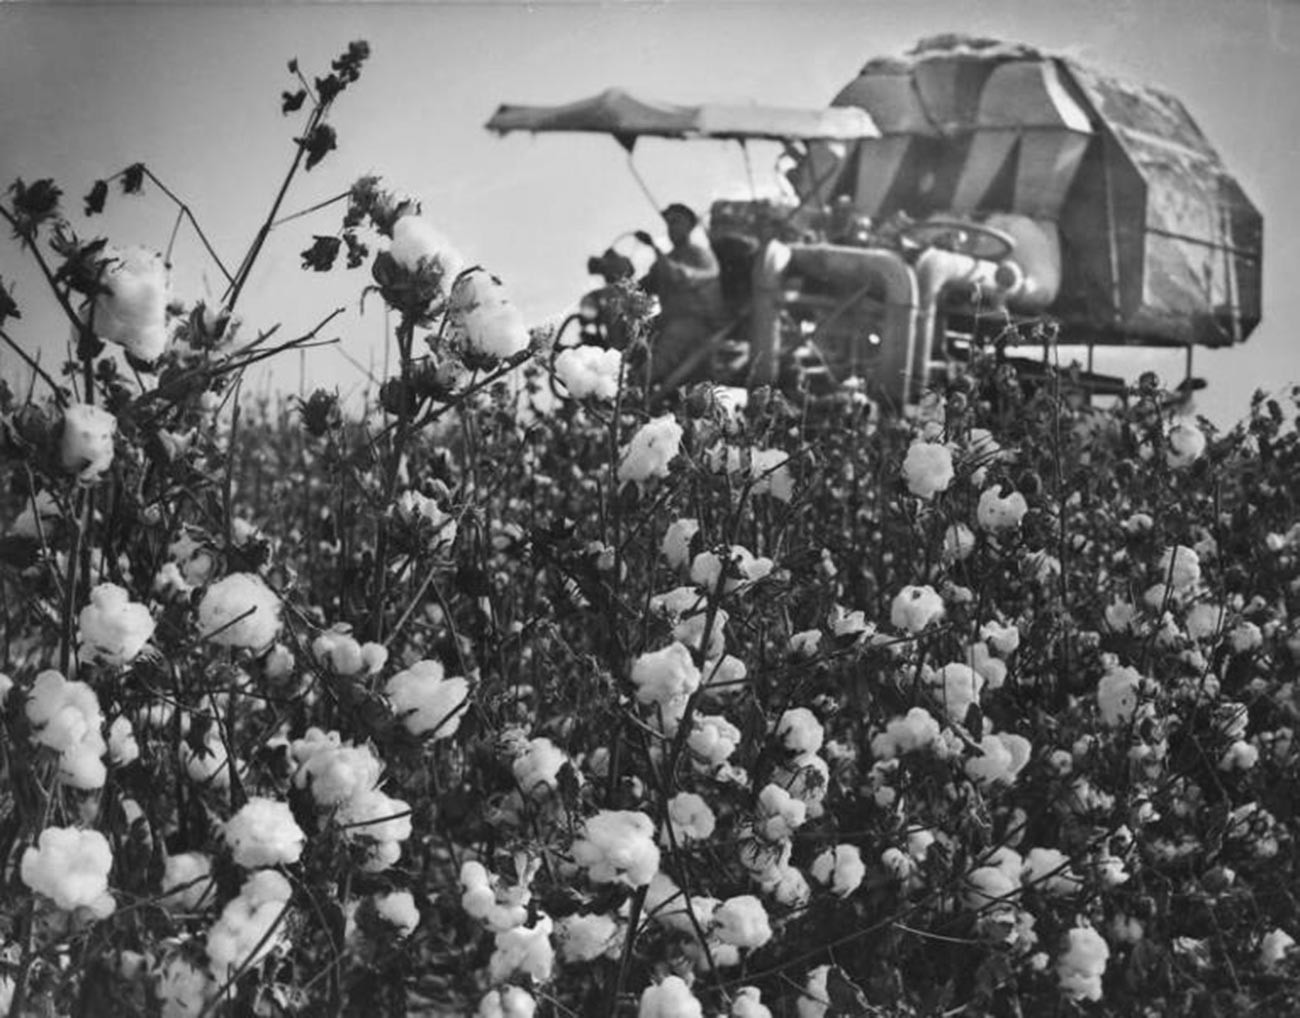 Uzbek Republic. Cotton harvest; 1970s.